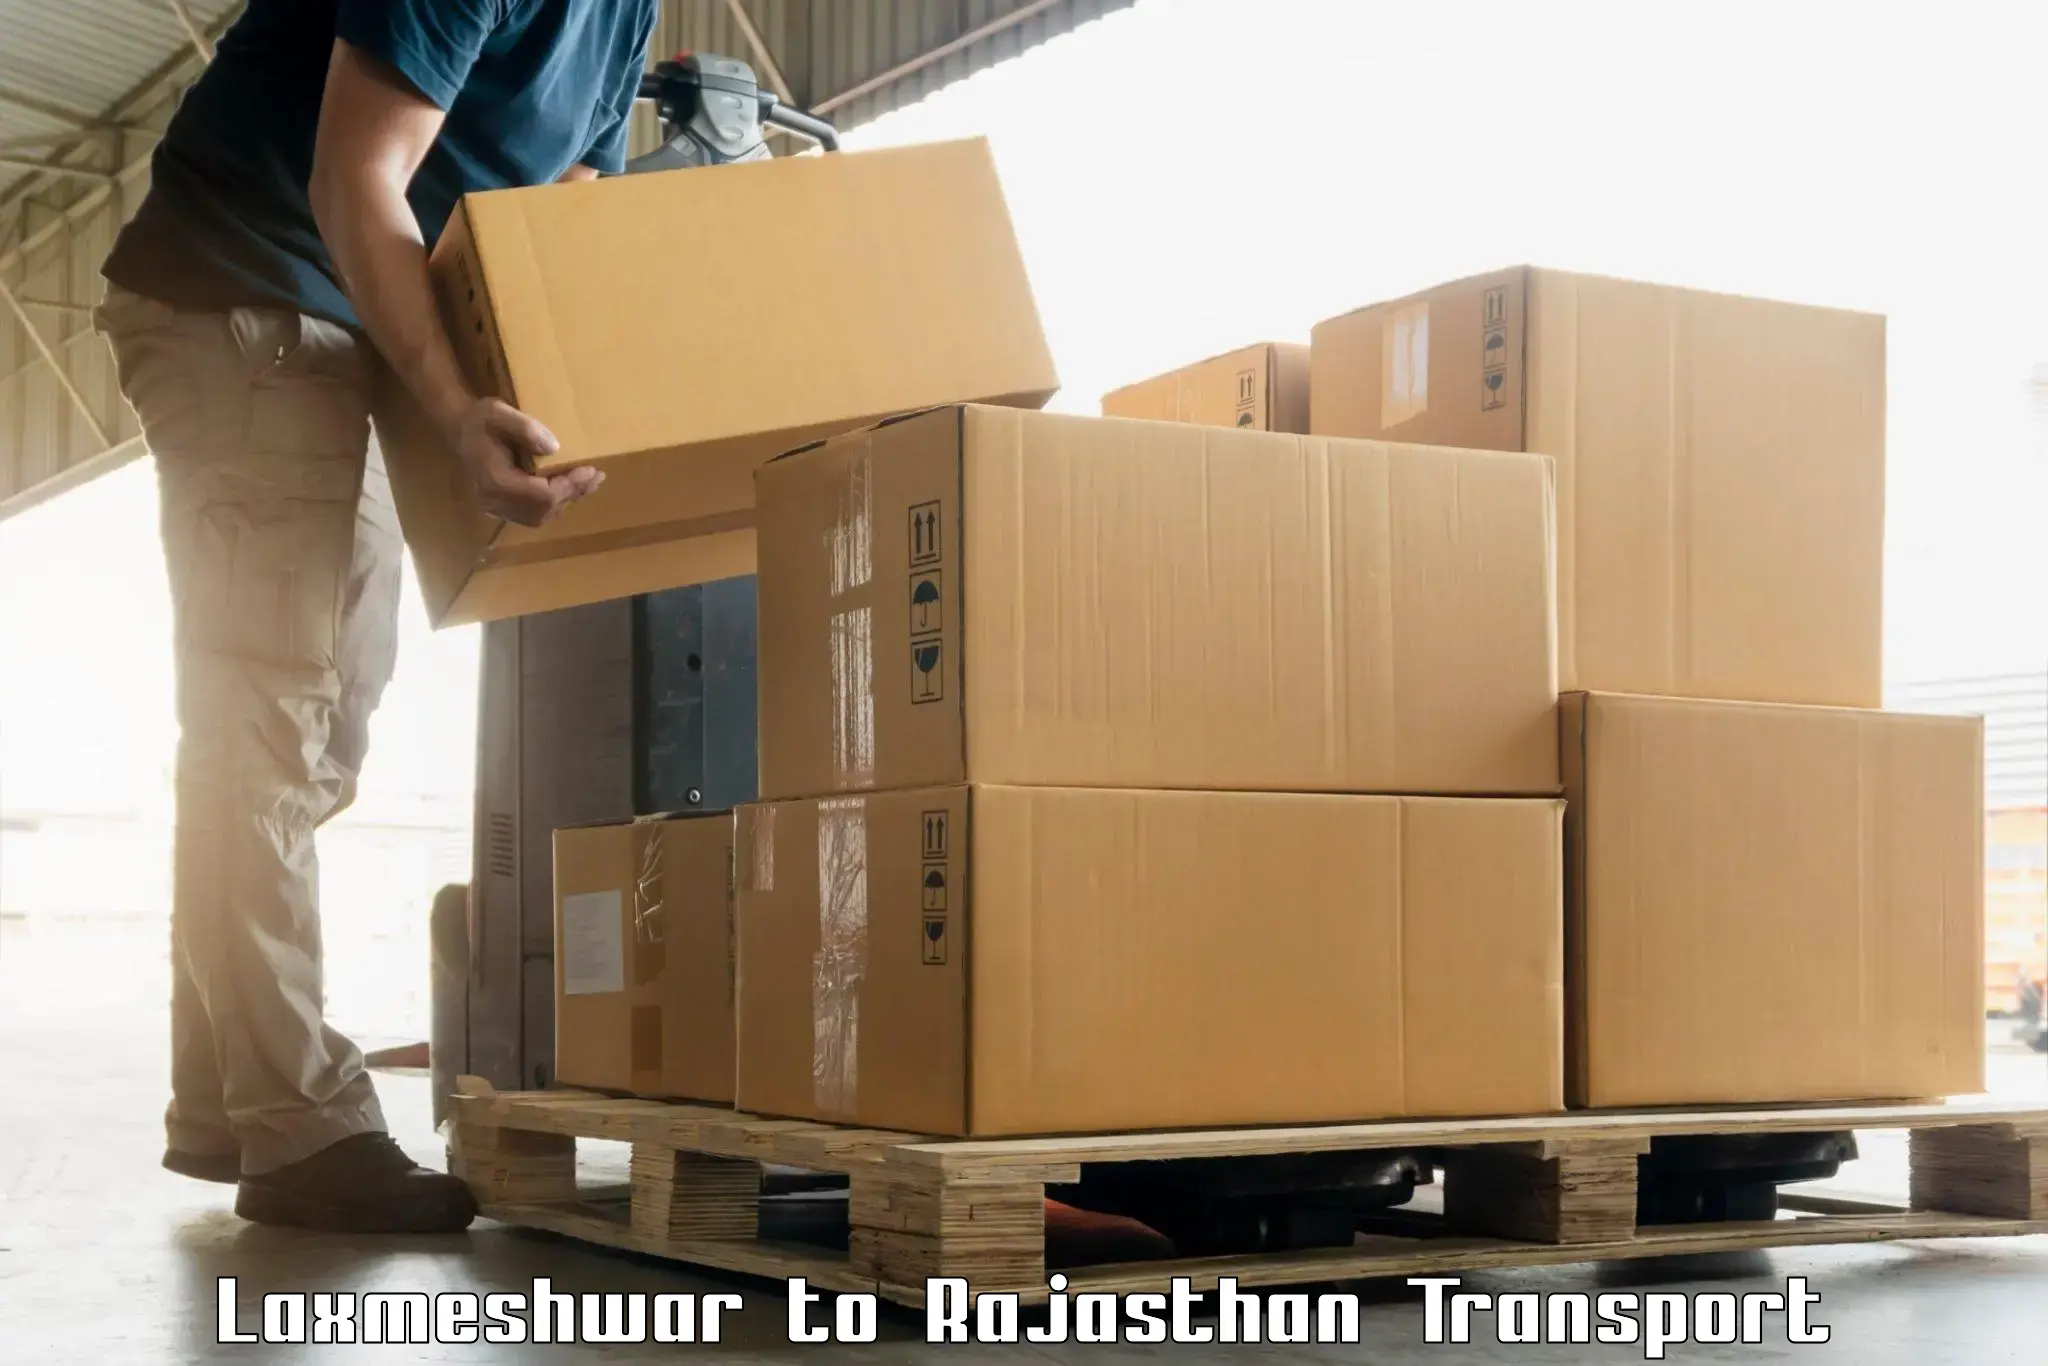 Furniture transport service Laxmeshwar to Rajasthan